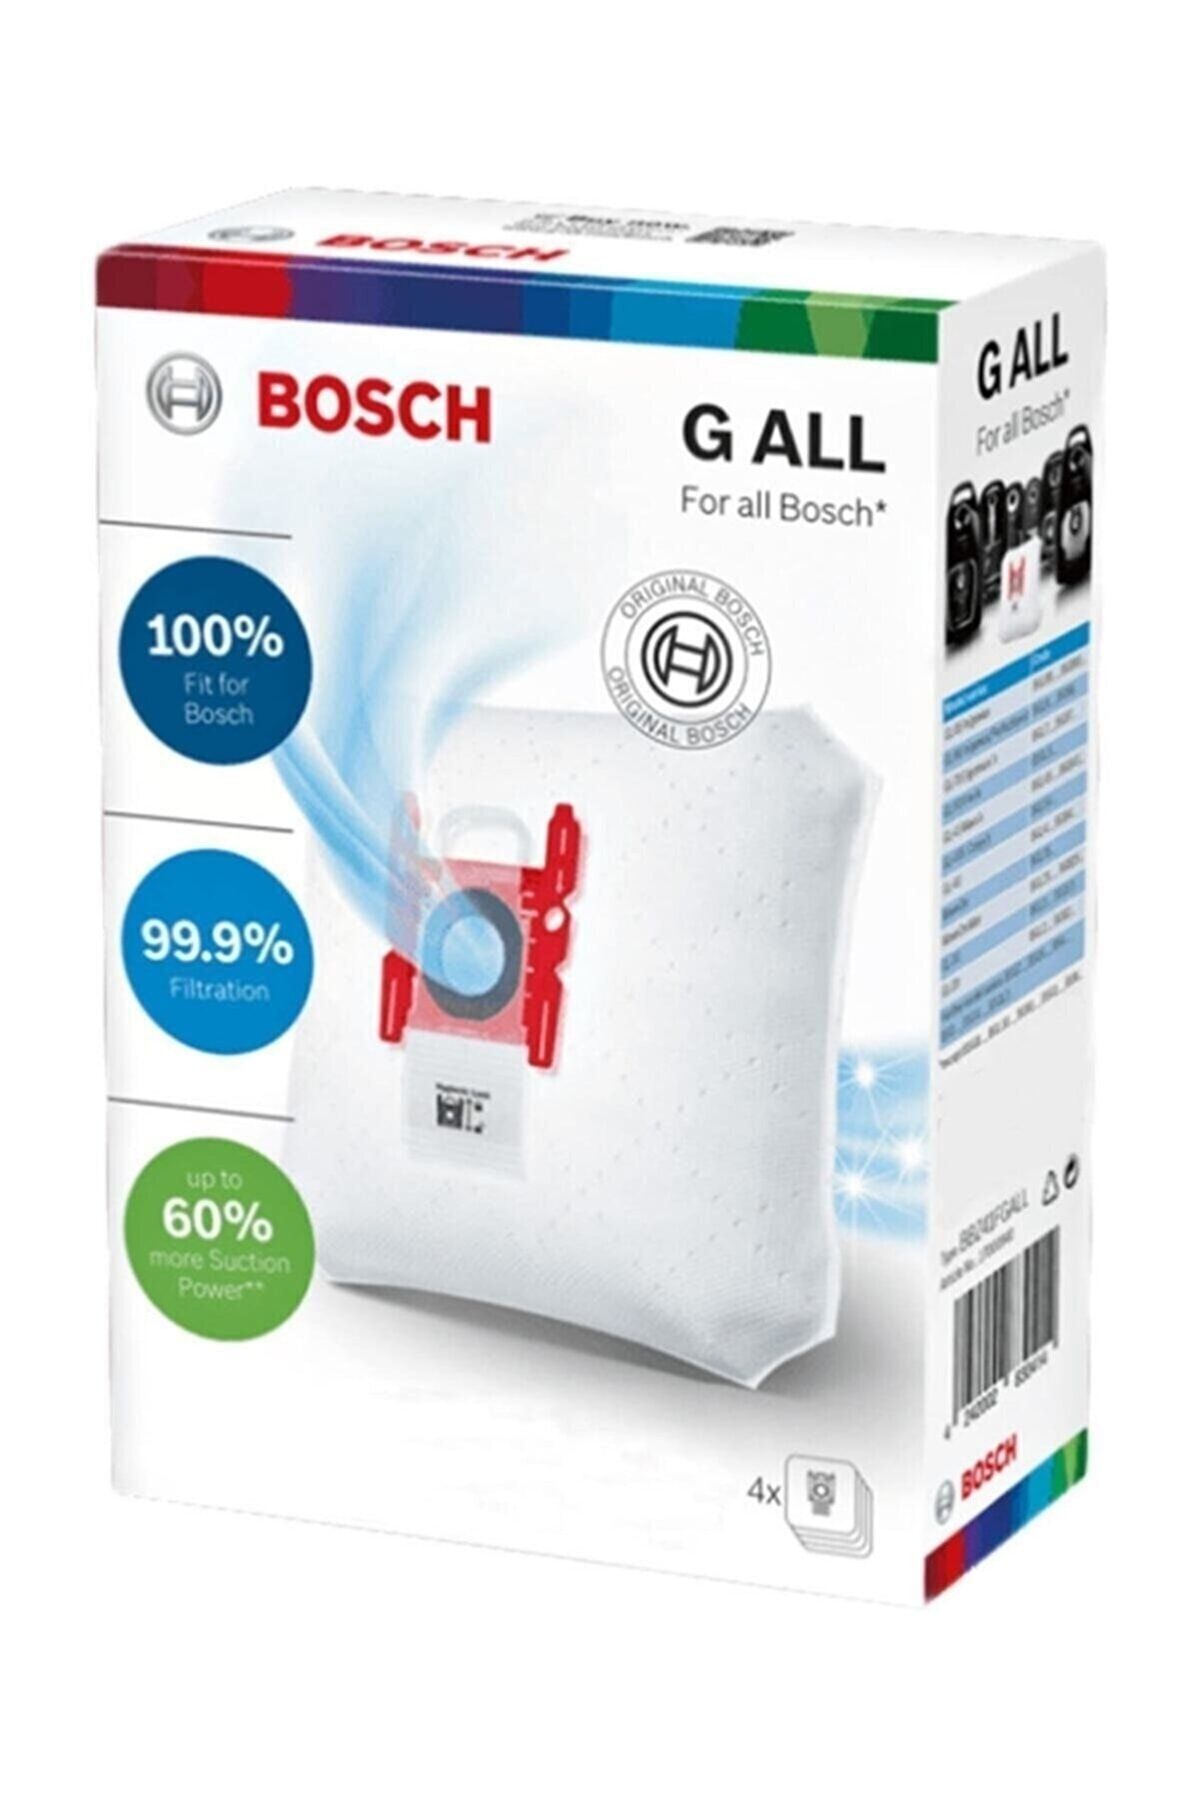 Bosch Siemens Gall Tipi Toz Torbası